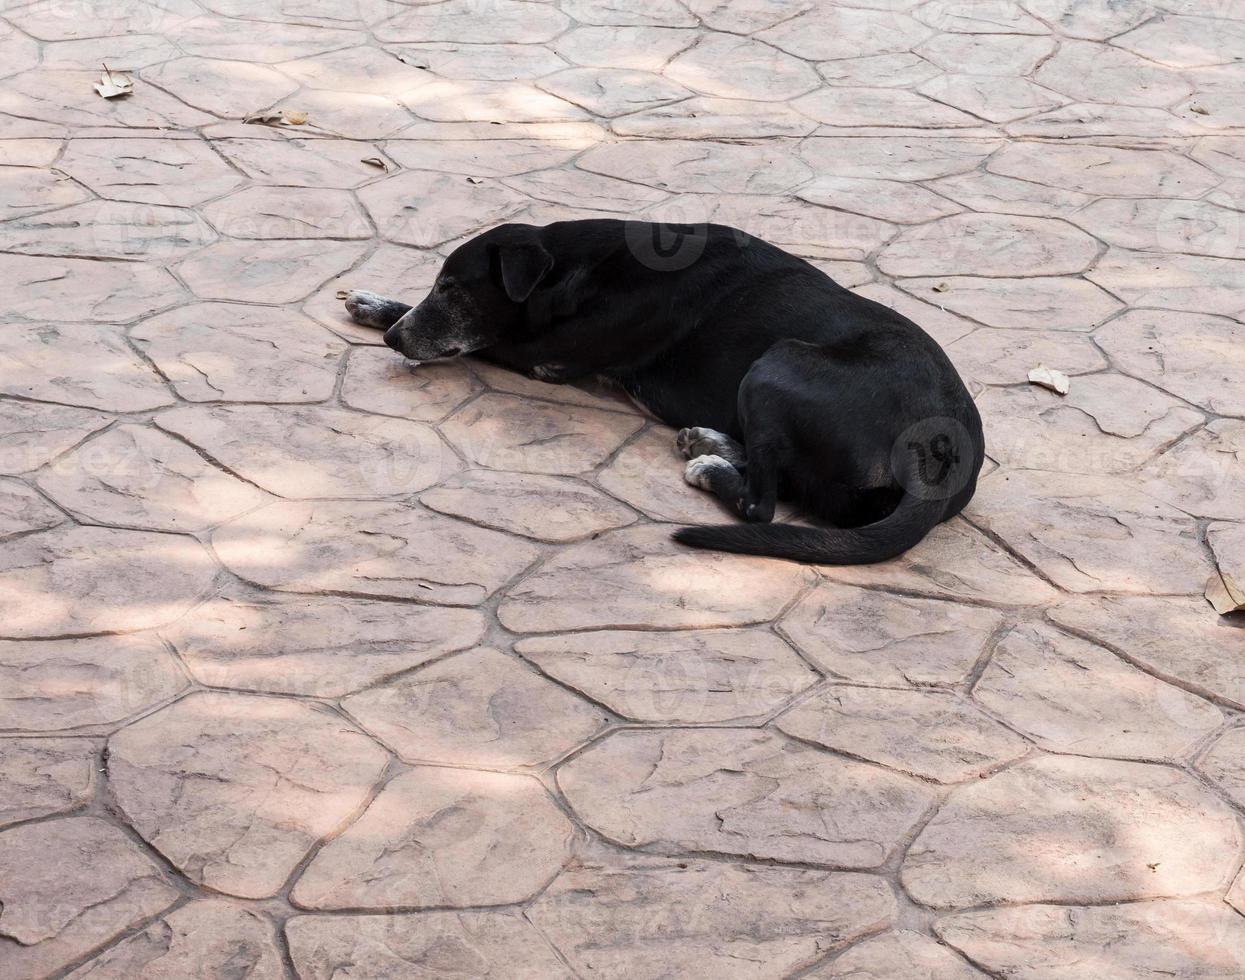 svart sjuk hund sover på betonggolvet. foto